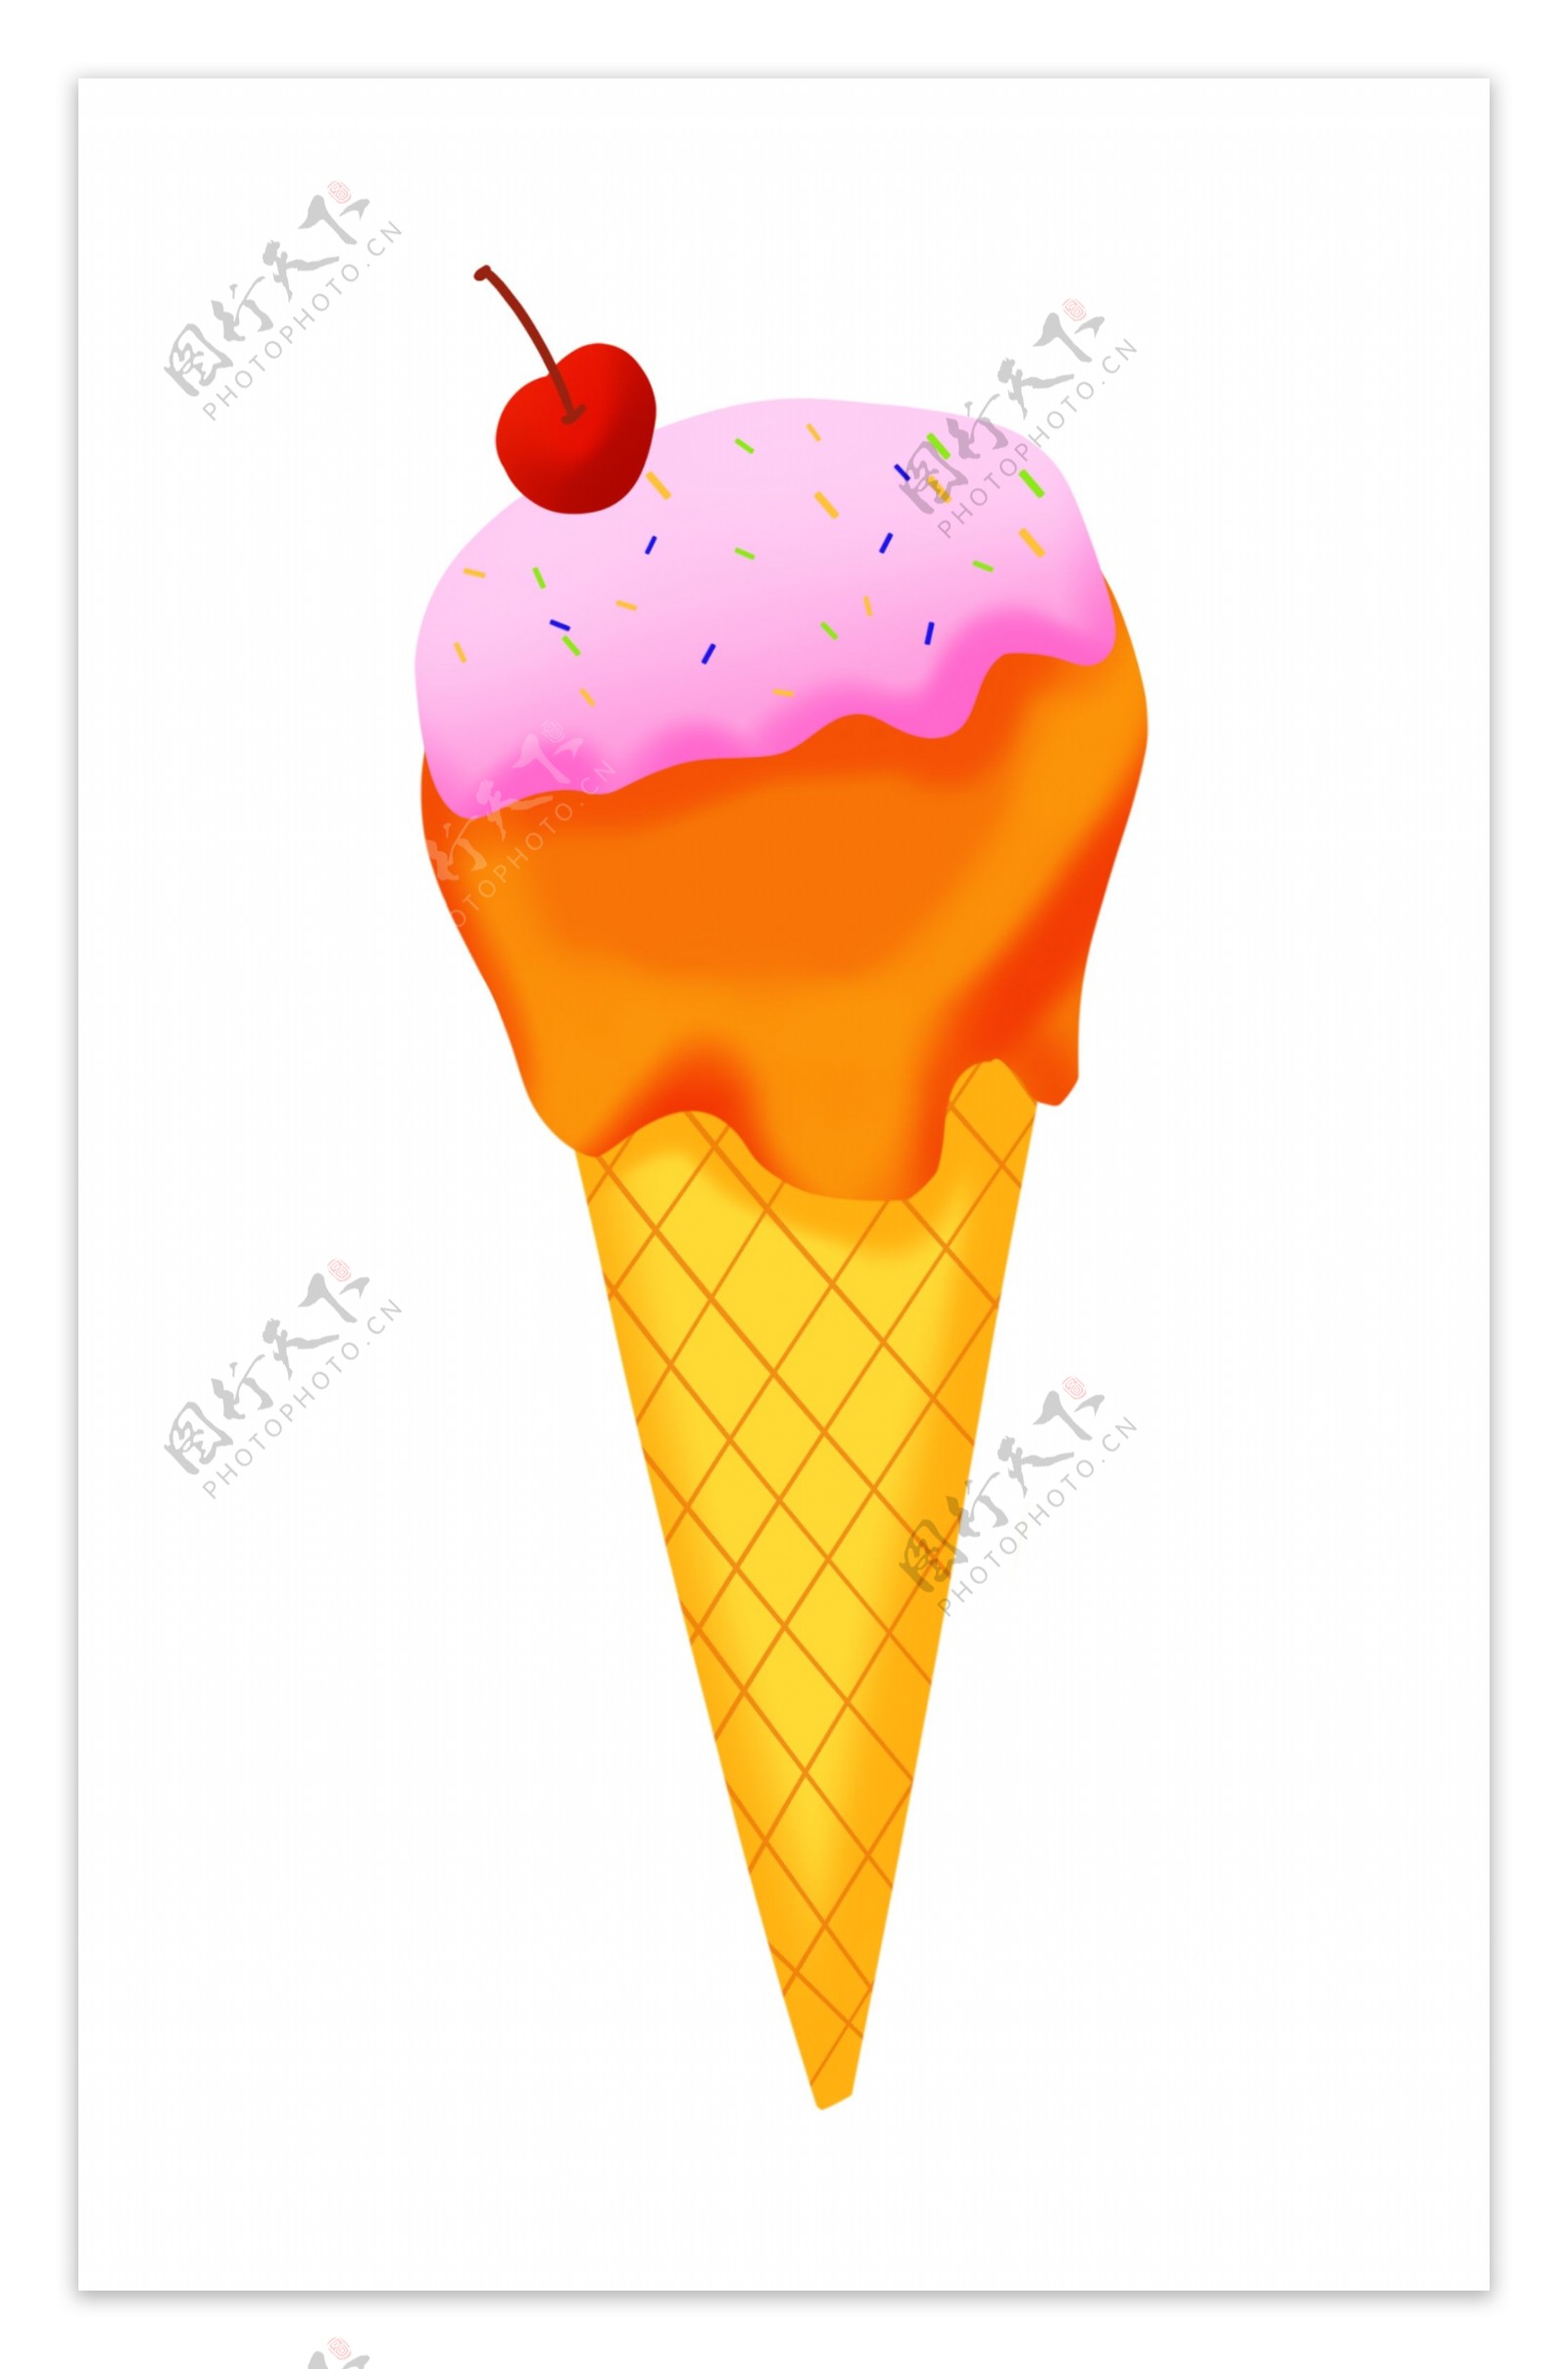 夏季樱桃冰淇淋